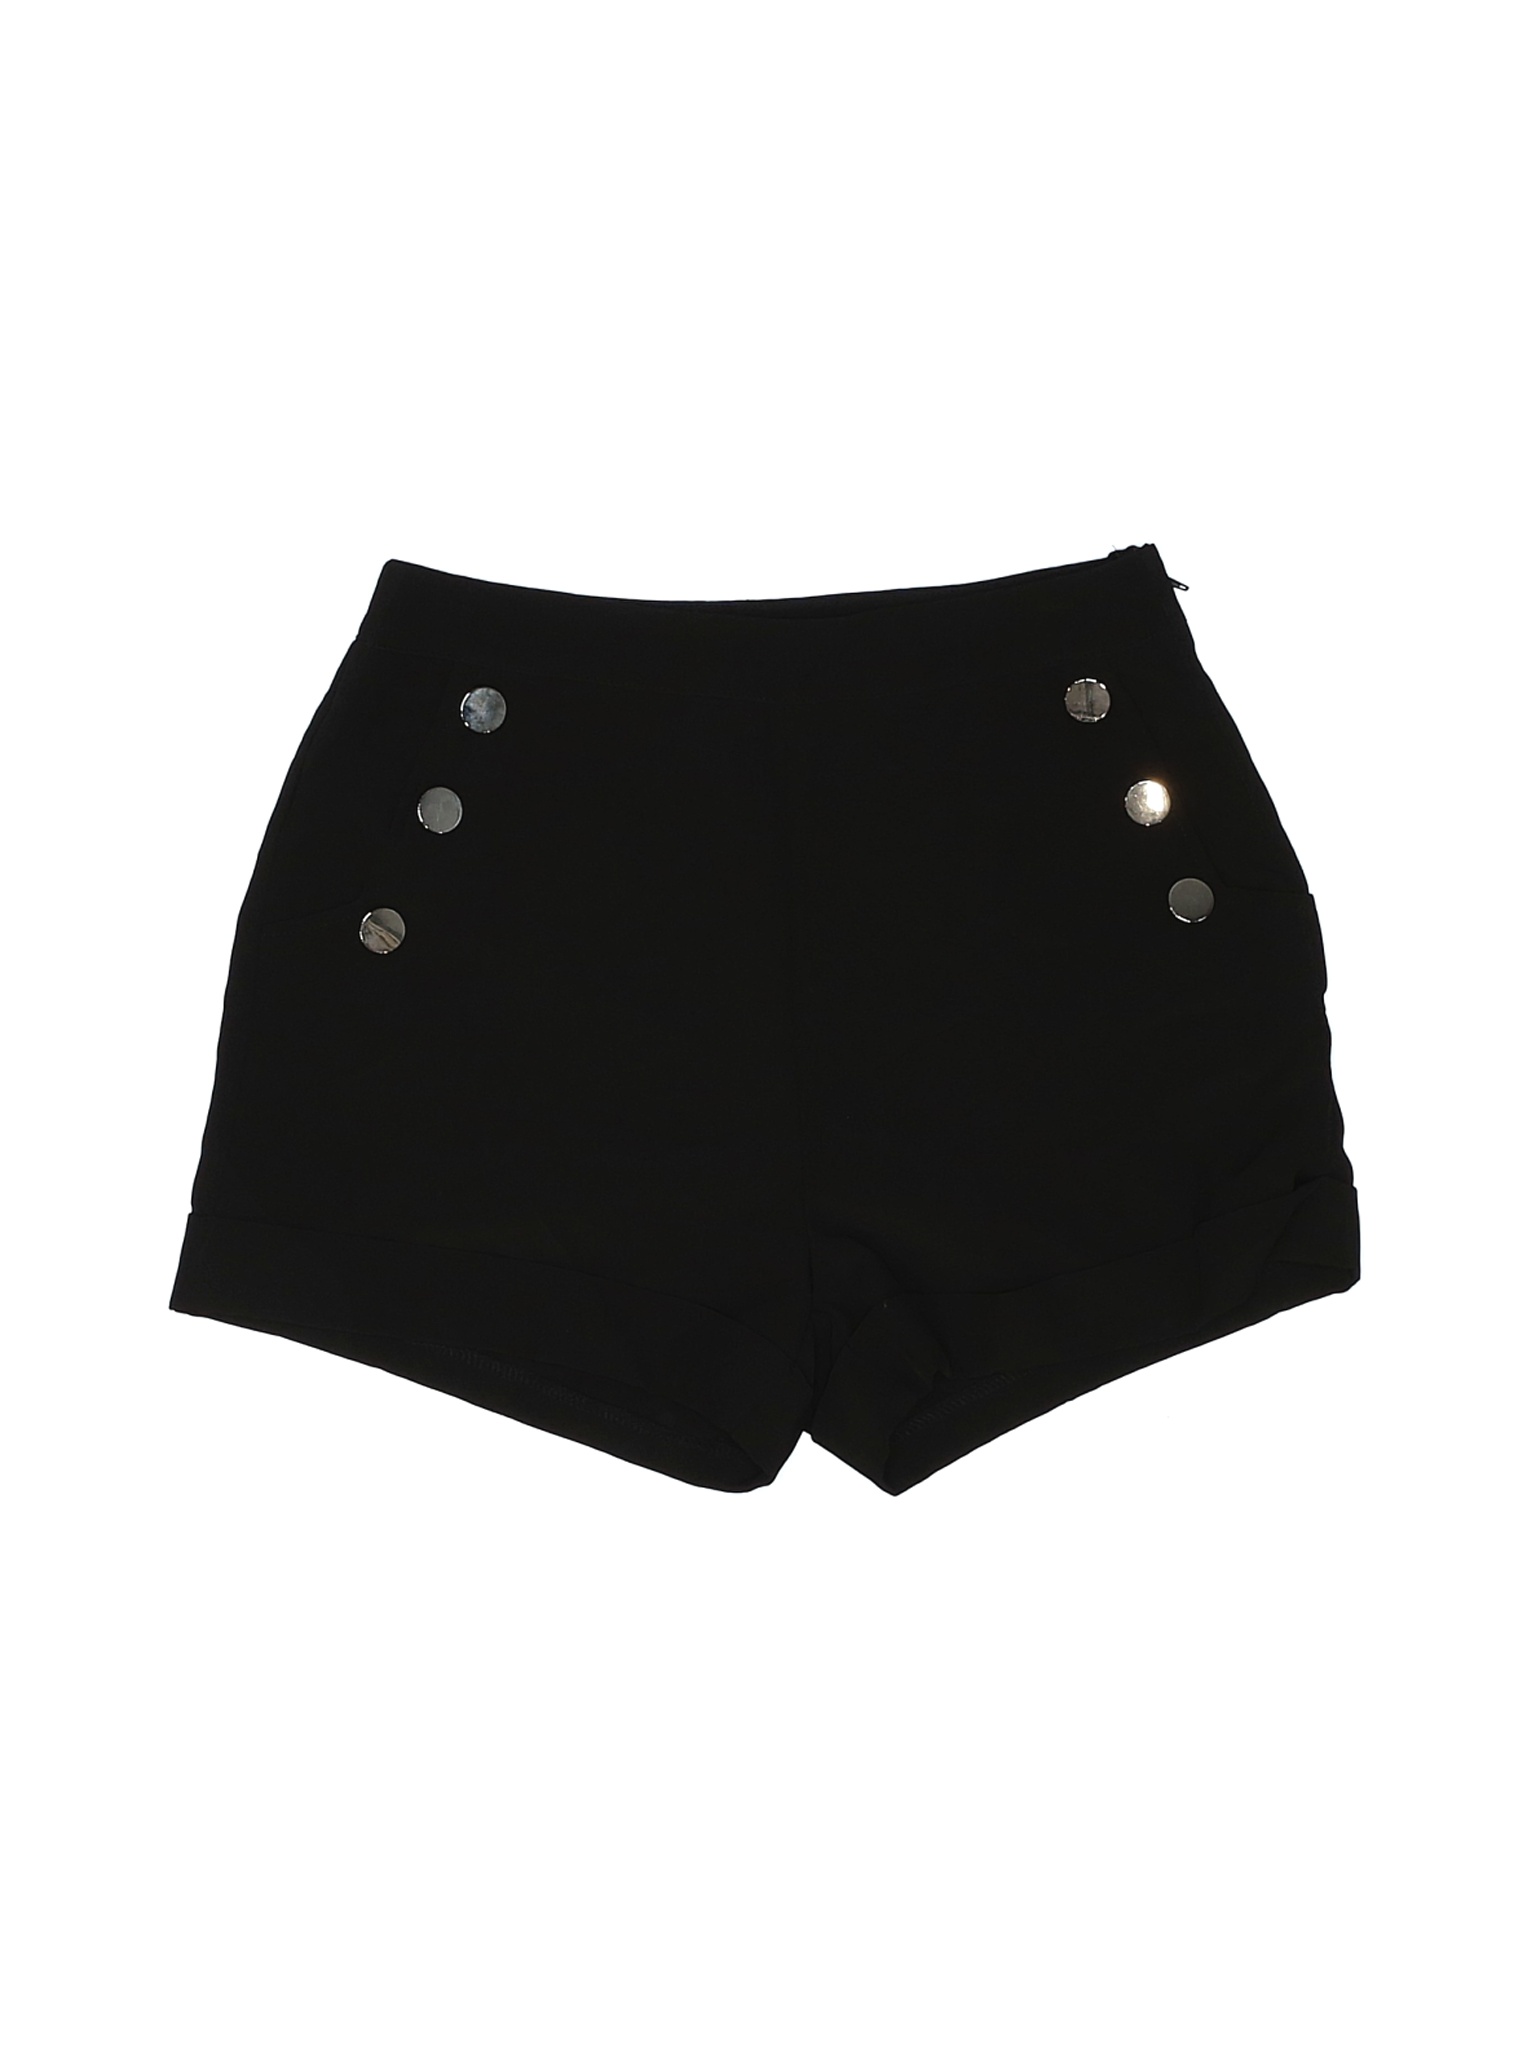 Entry Women Black Dressy Shorts M | eBay